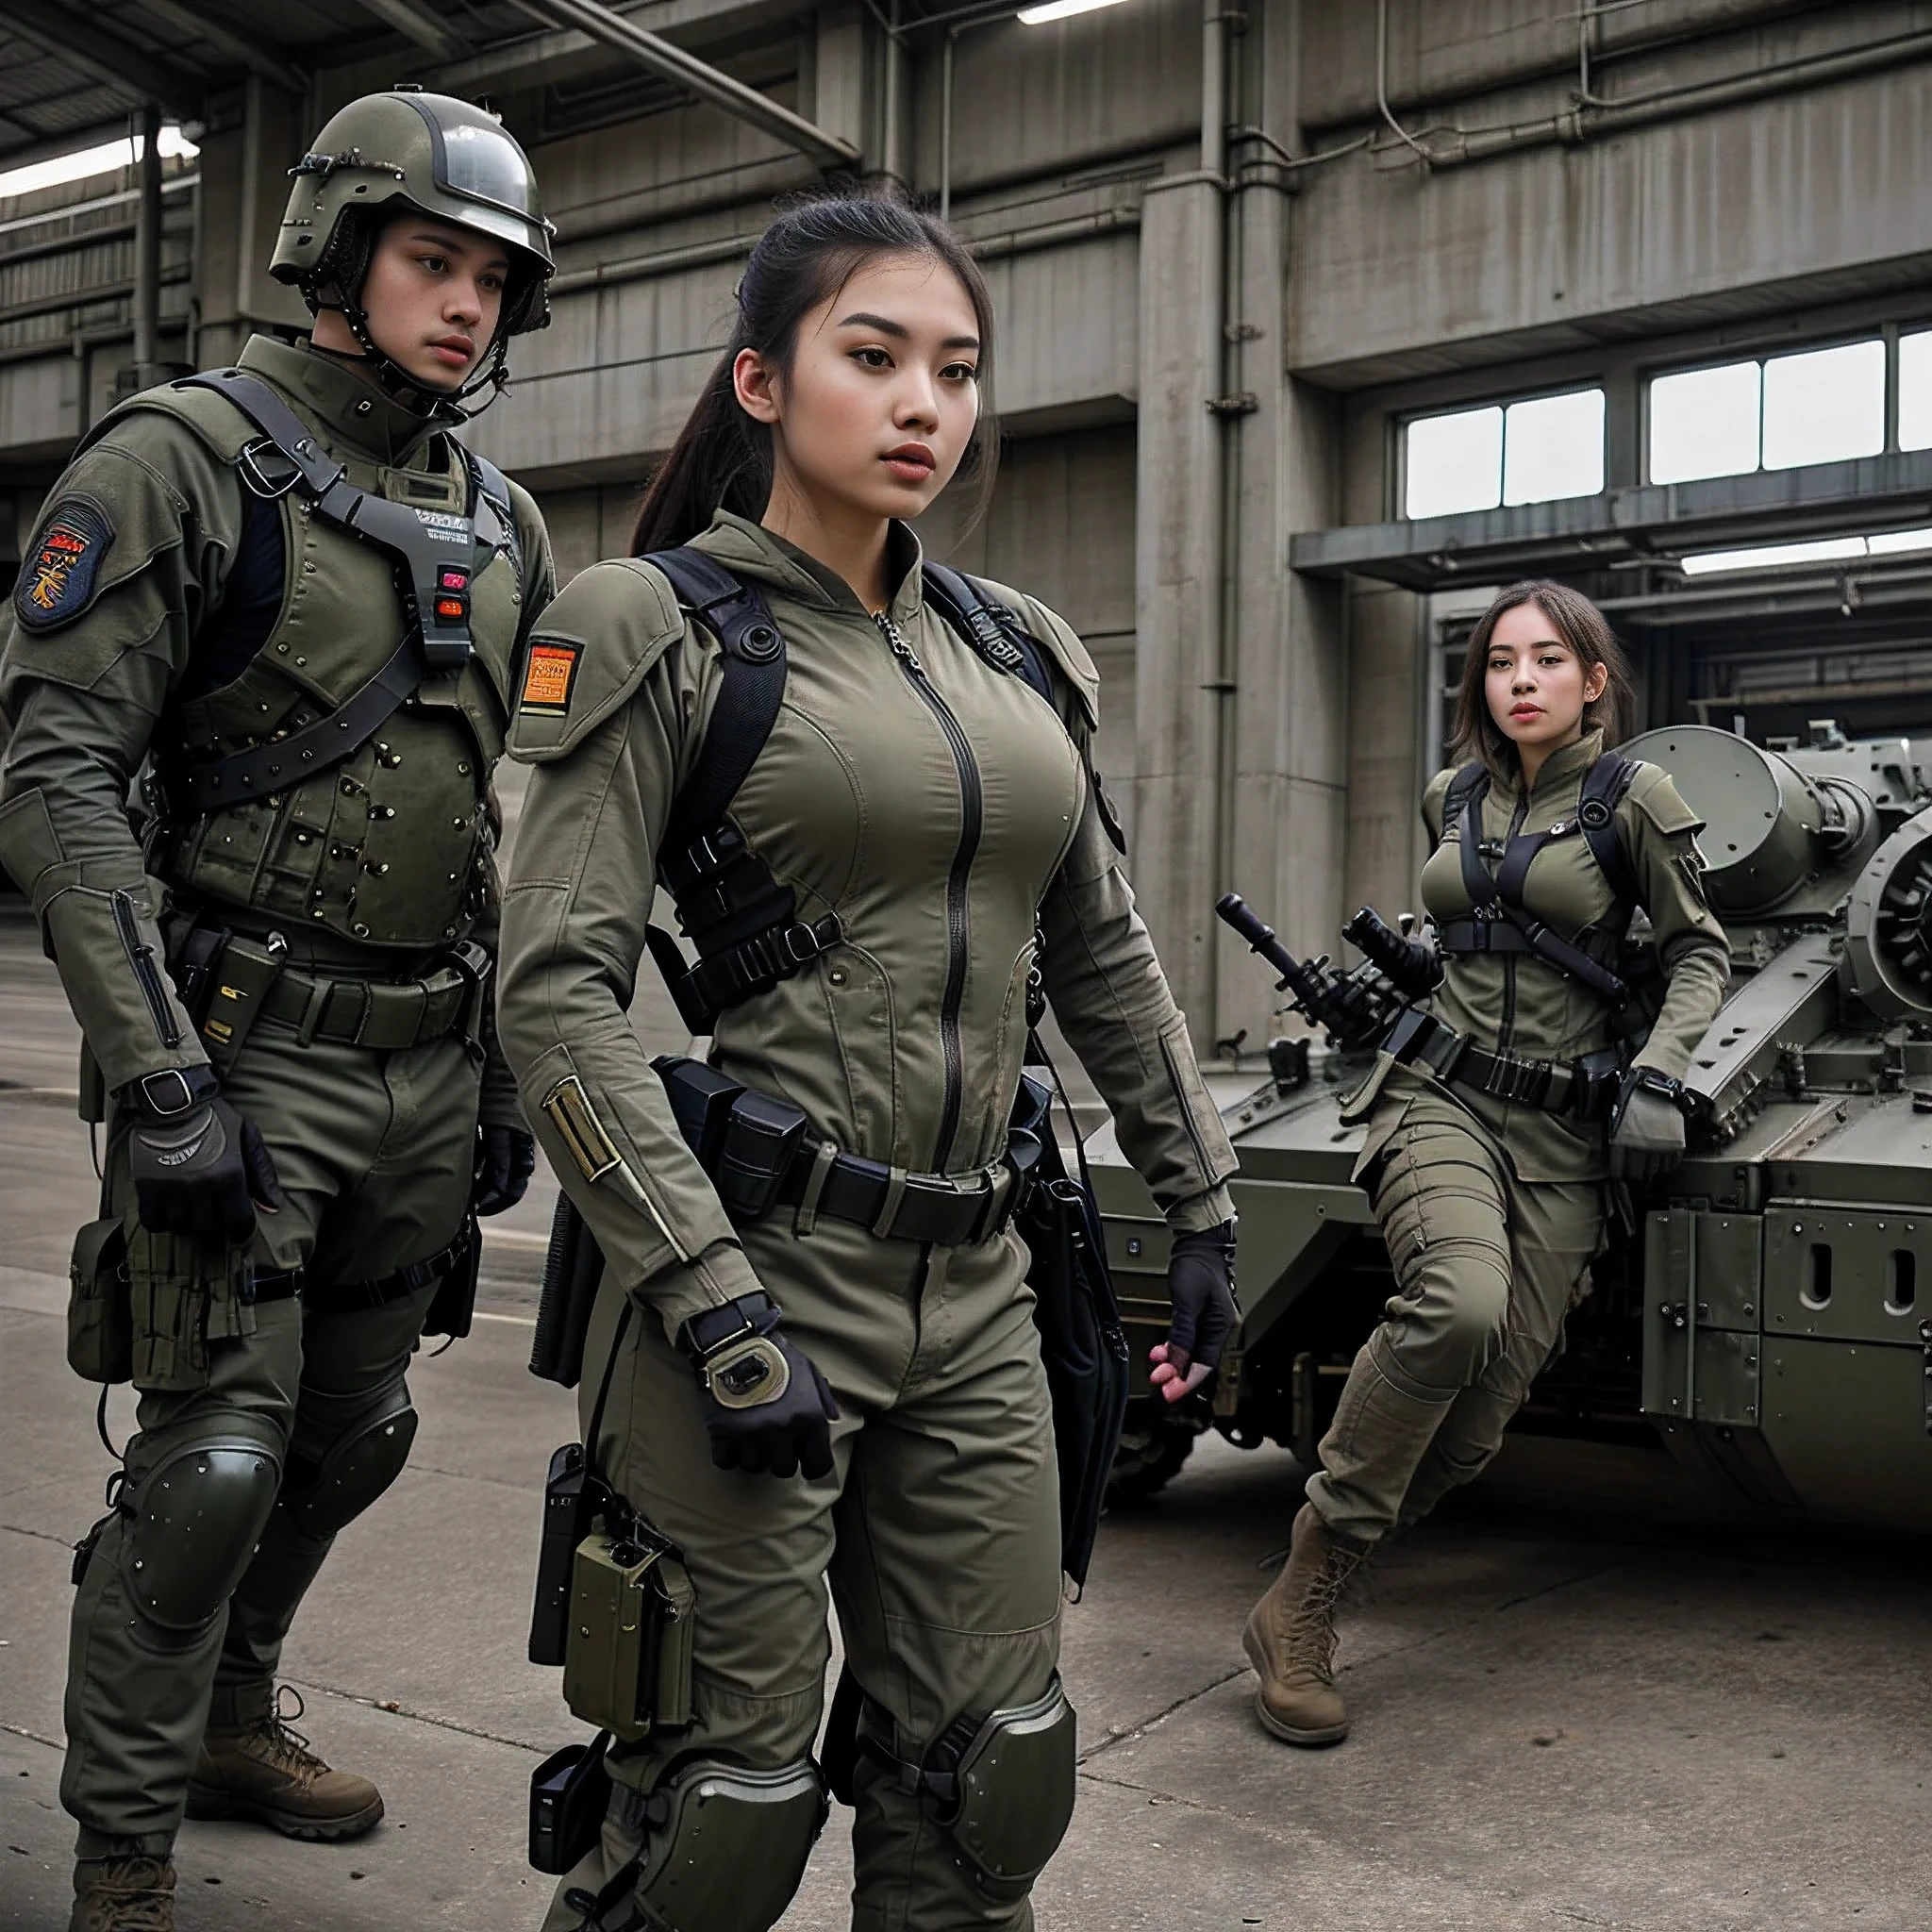 (melhor qualidade), fundo detalhado oriental, ficção científica,braços mecânicos,garota com homem , guerra, exército de monstros, roupas tecnológicas,, uniforme militar